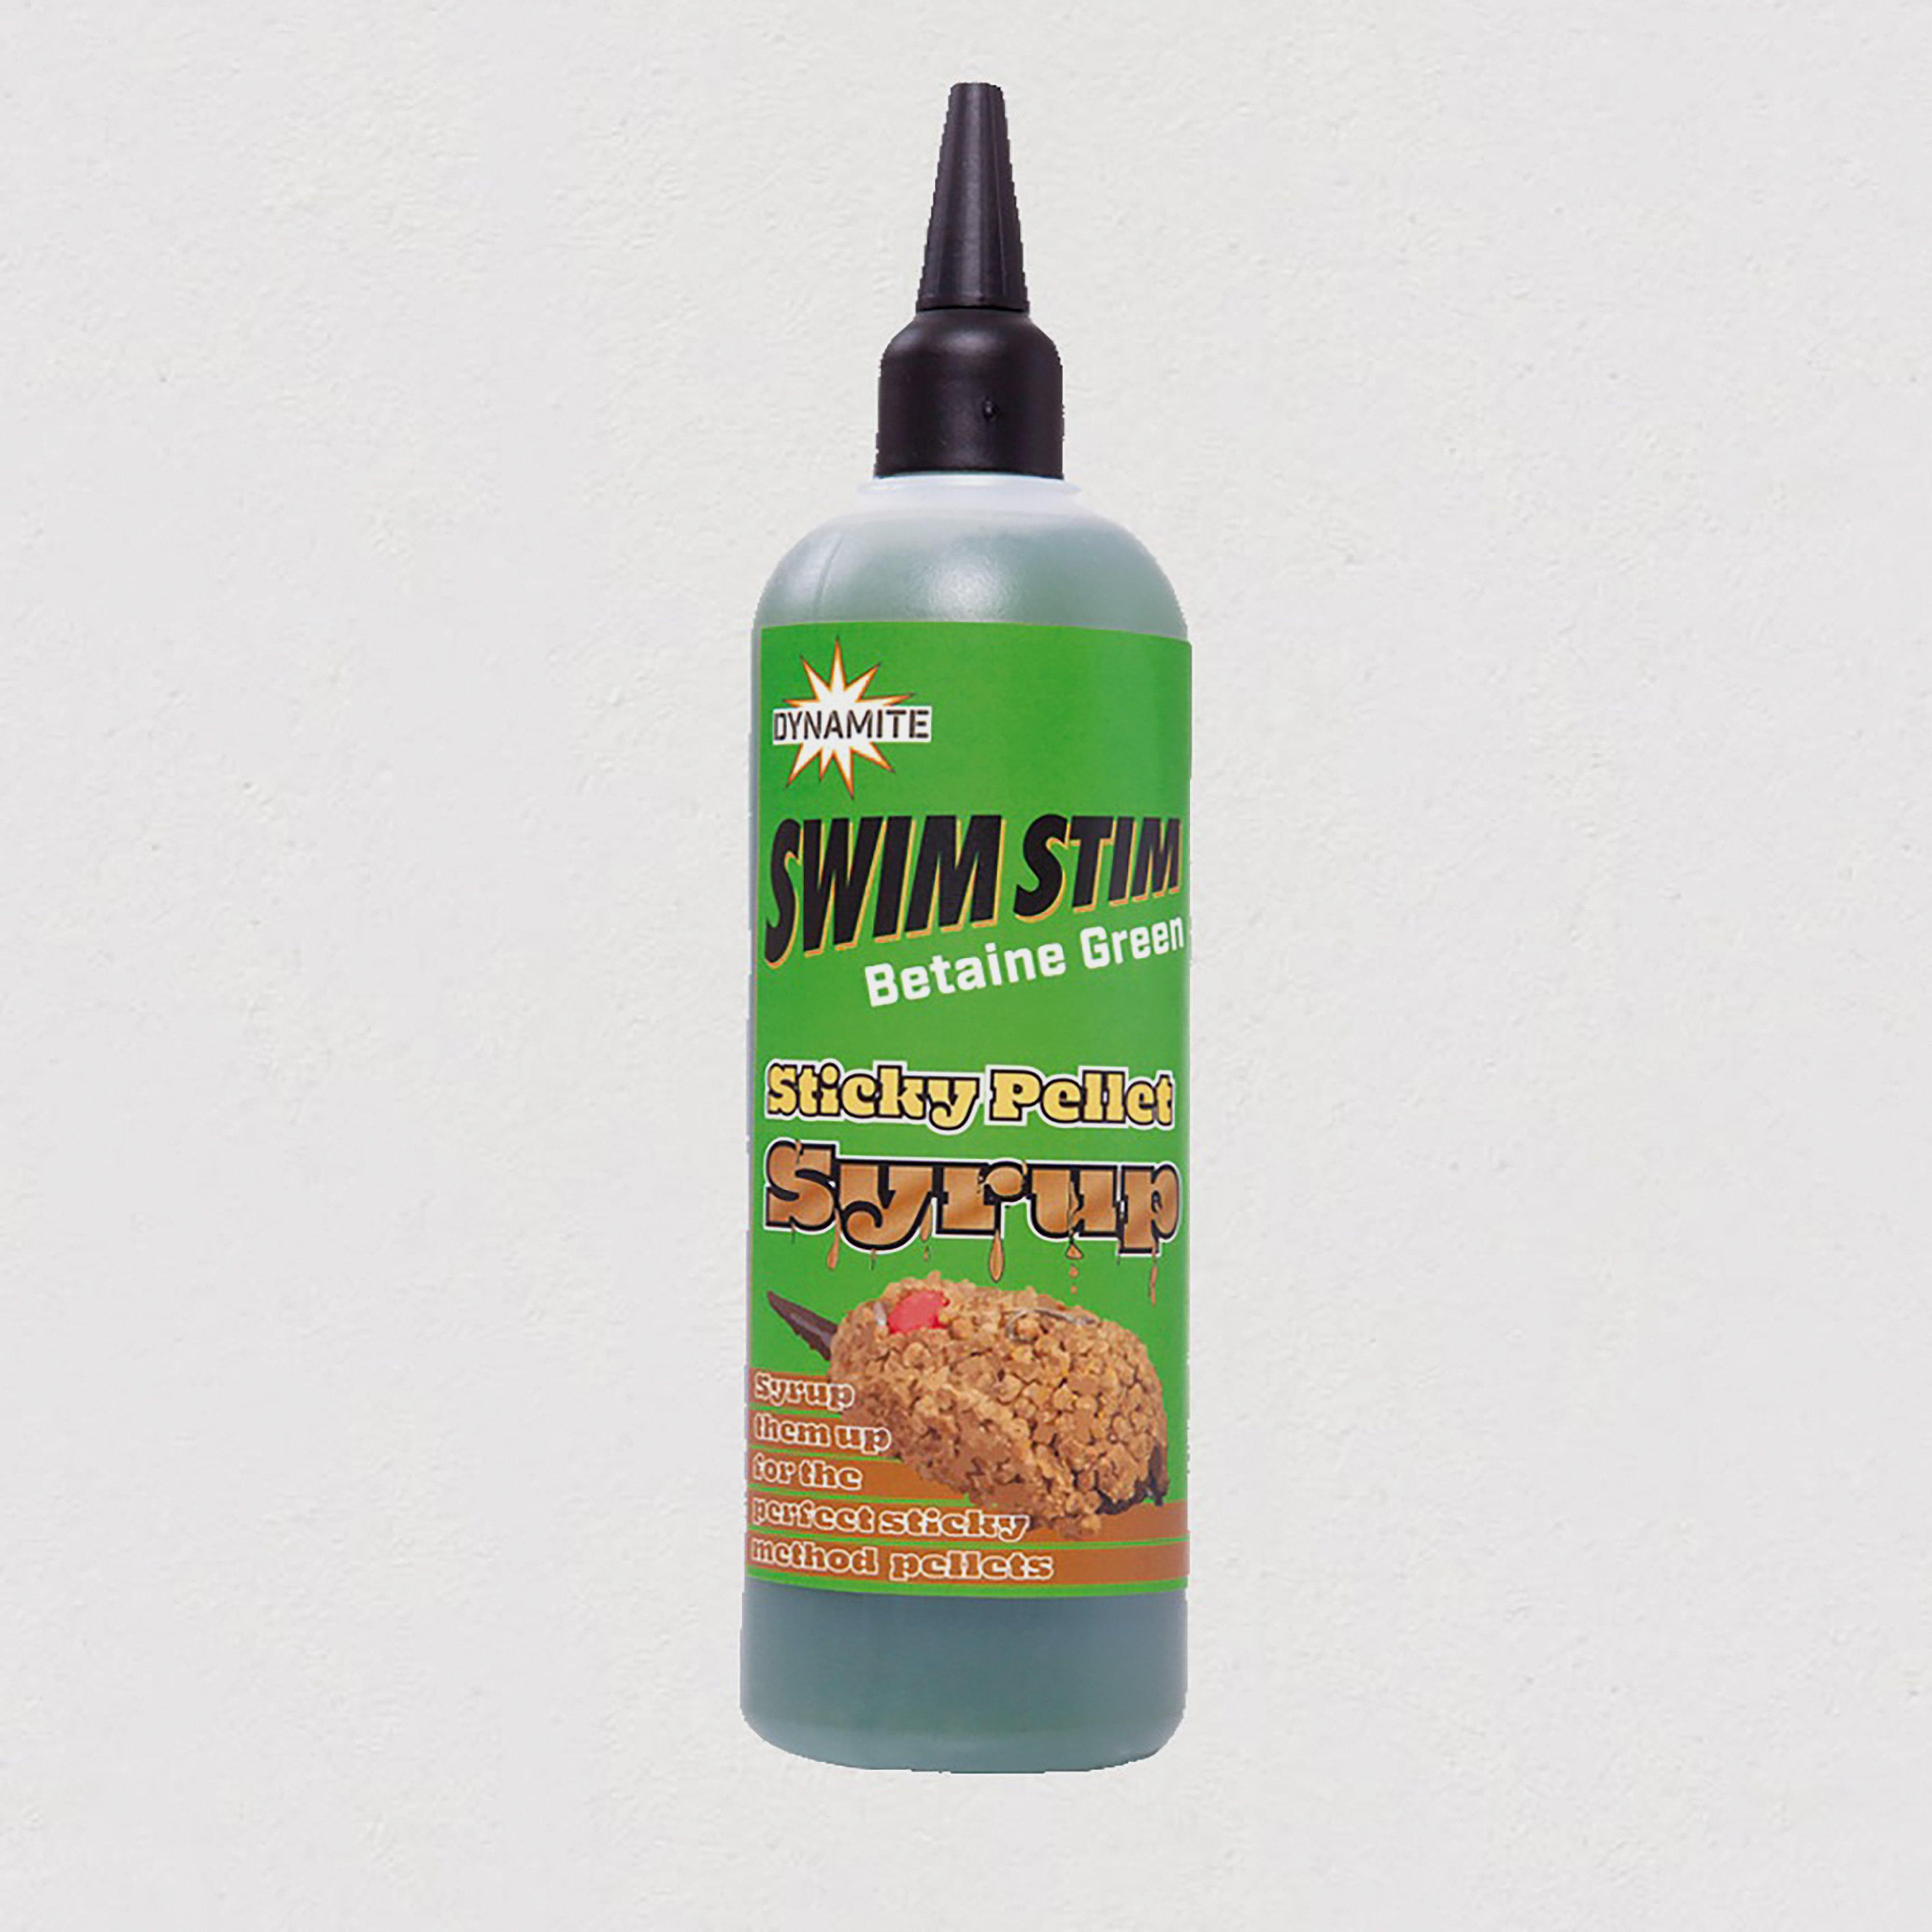 Image of Swim Stim Sticky Pellet Syrup